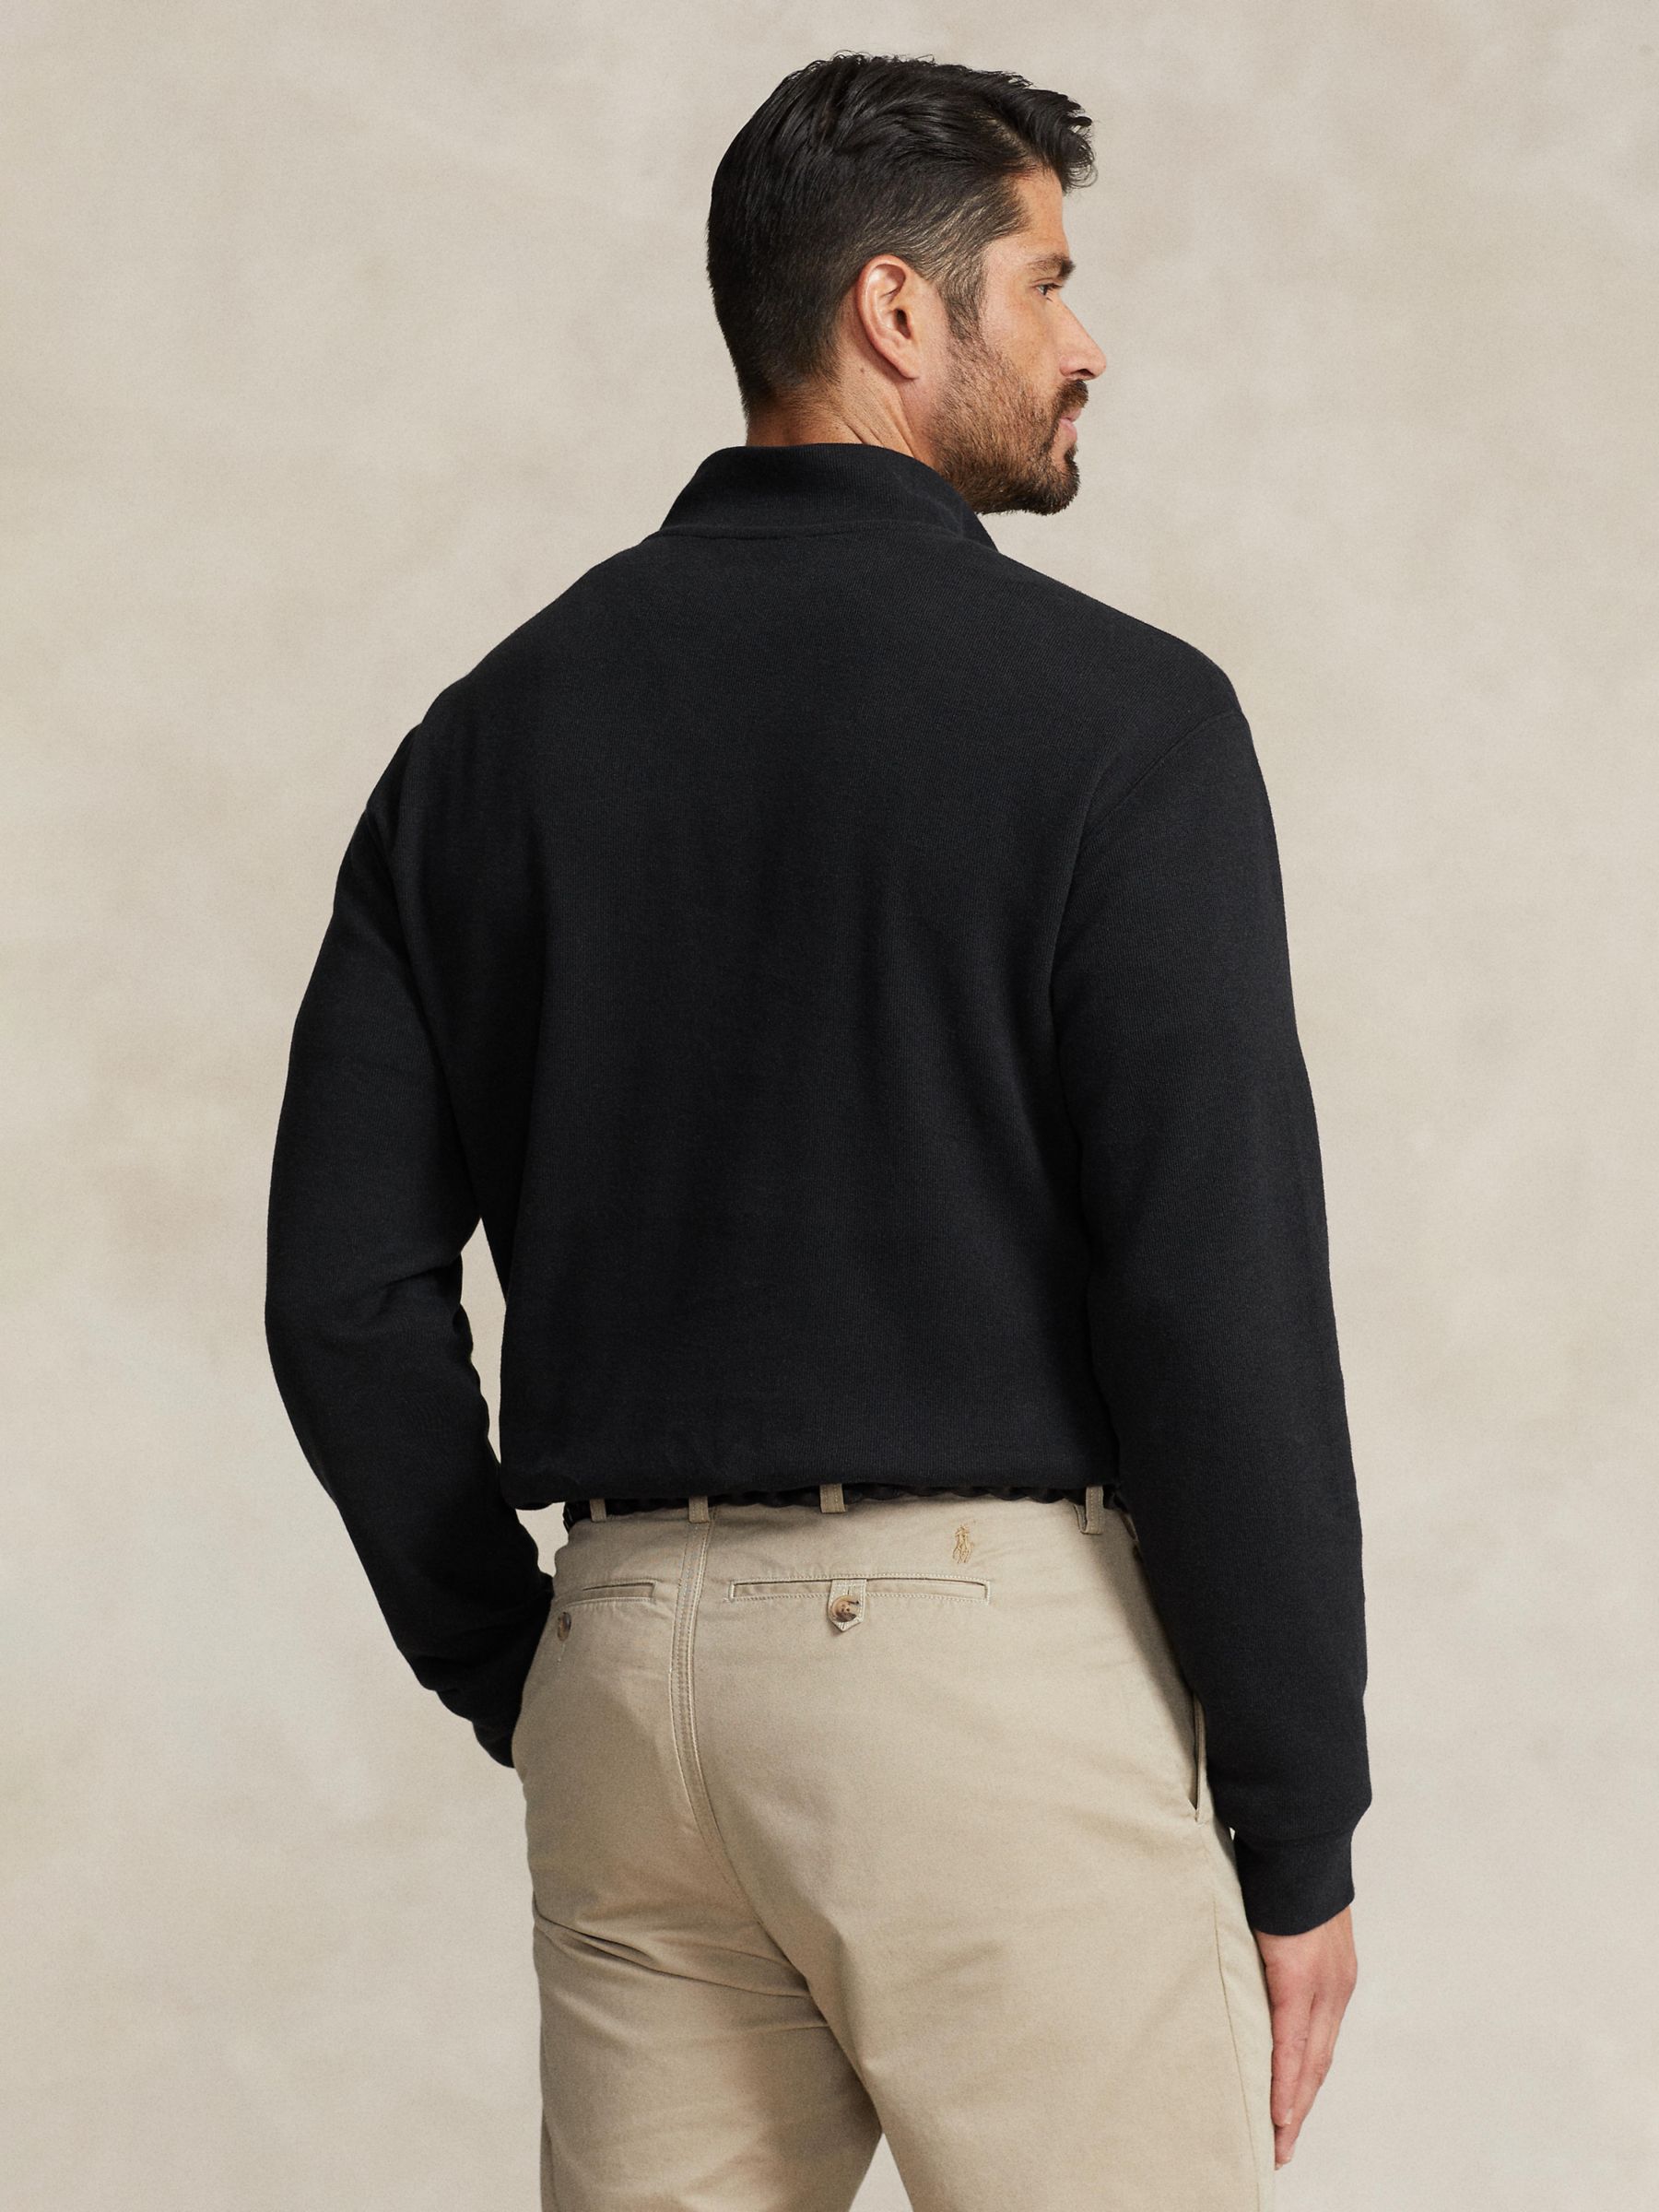 Men's Estate-Rib Quarter-Zip Pullover Top